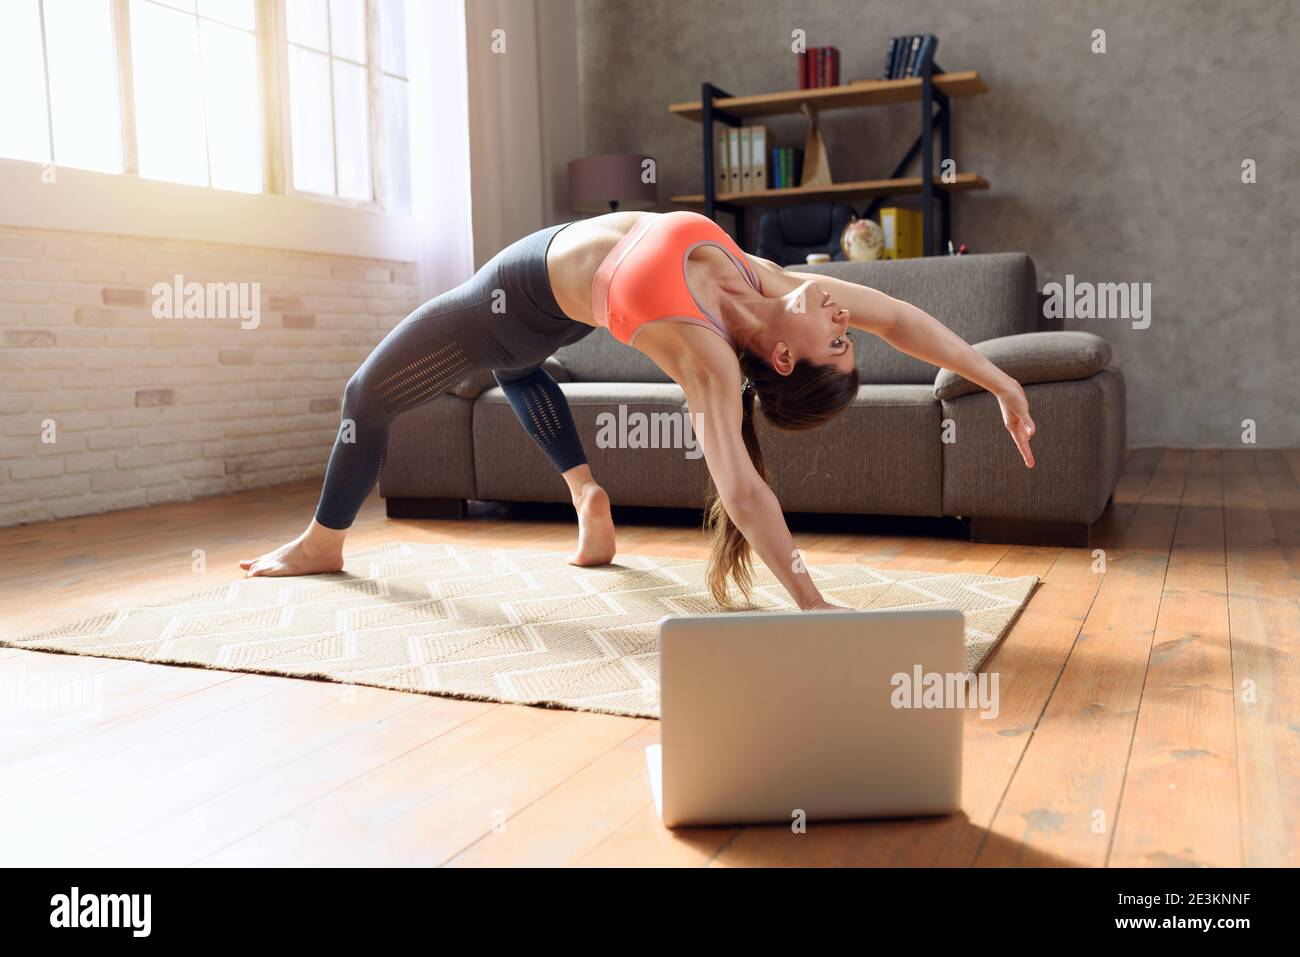 Una mujer joven sigue con un ordenador portátil un ejercicio de gimnasio. Está en casa debido a la cuarentena del coronavirus codigo-19 Foto de stock